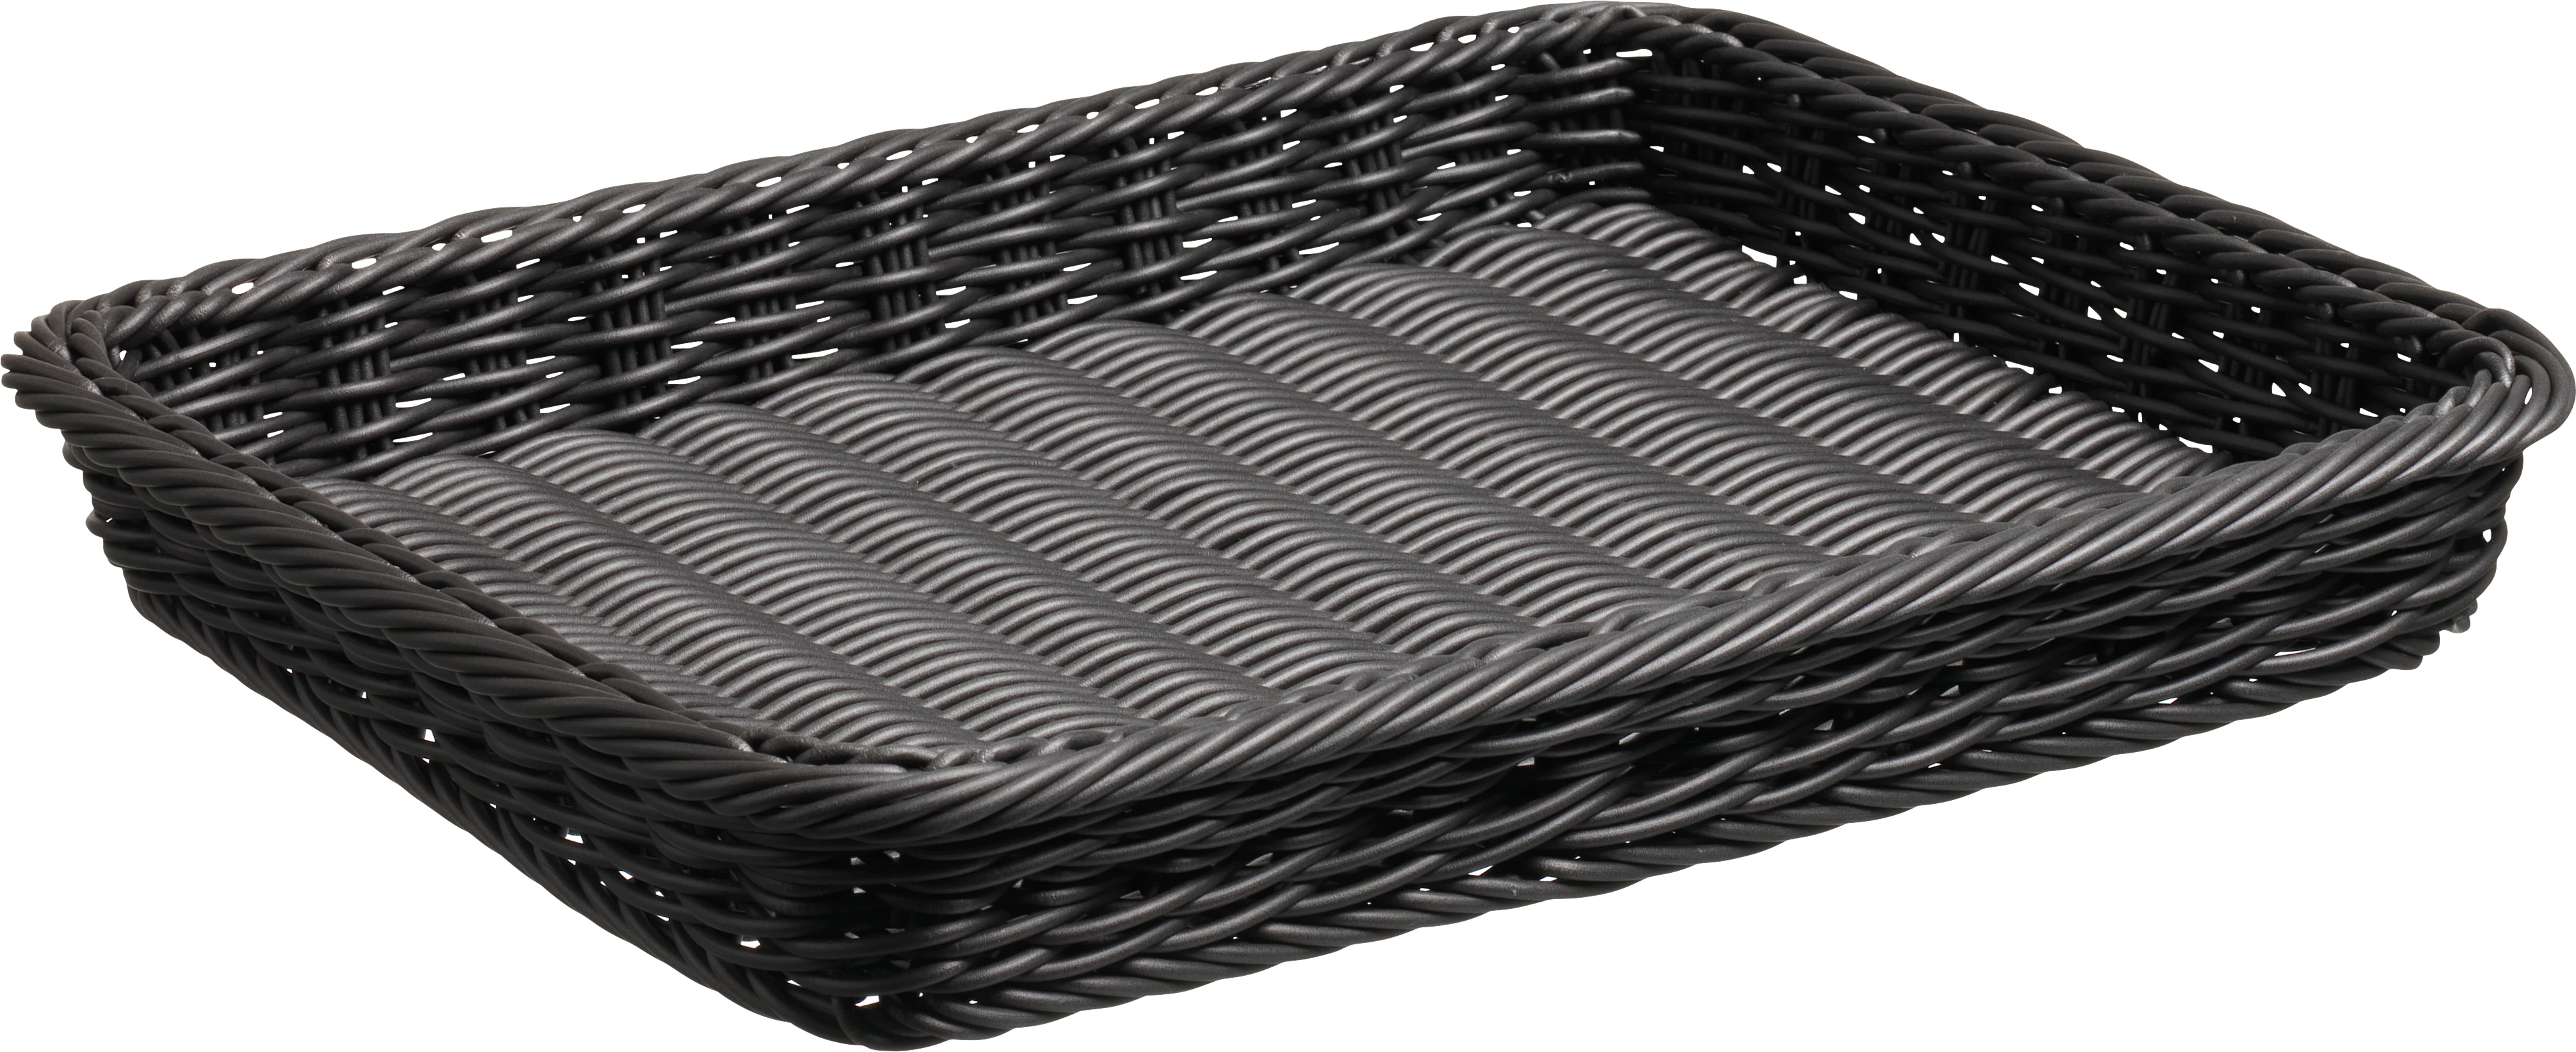 Brødkurv, sort plast, 36,5 x 29 x 5 cm